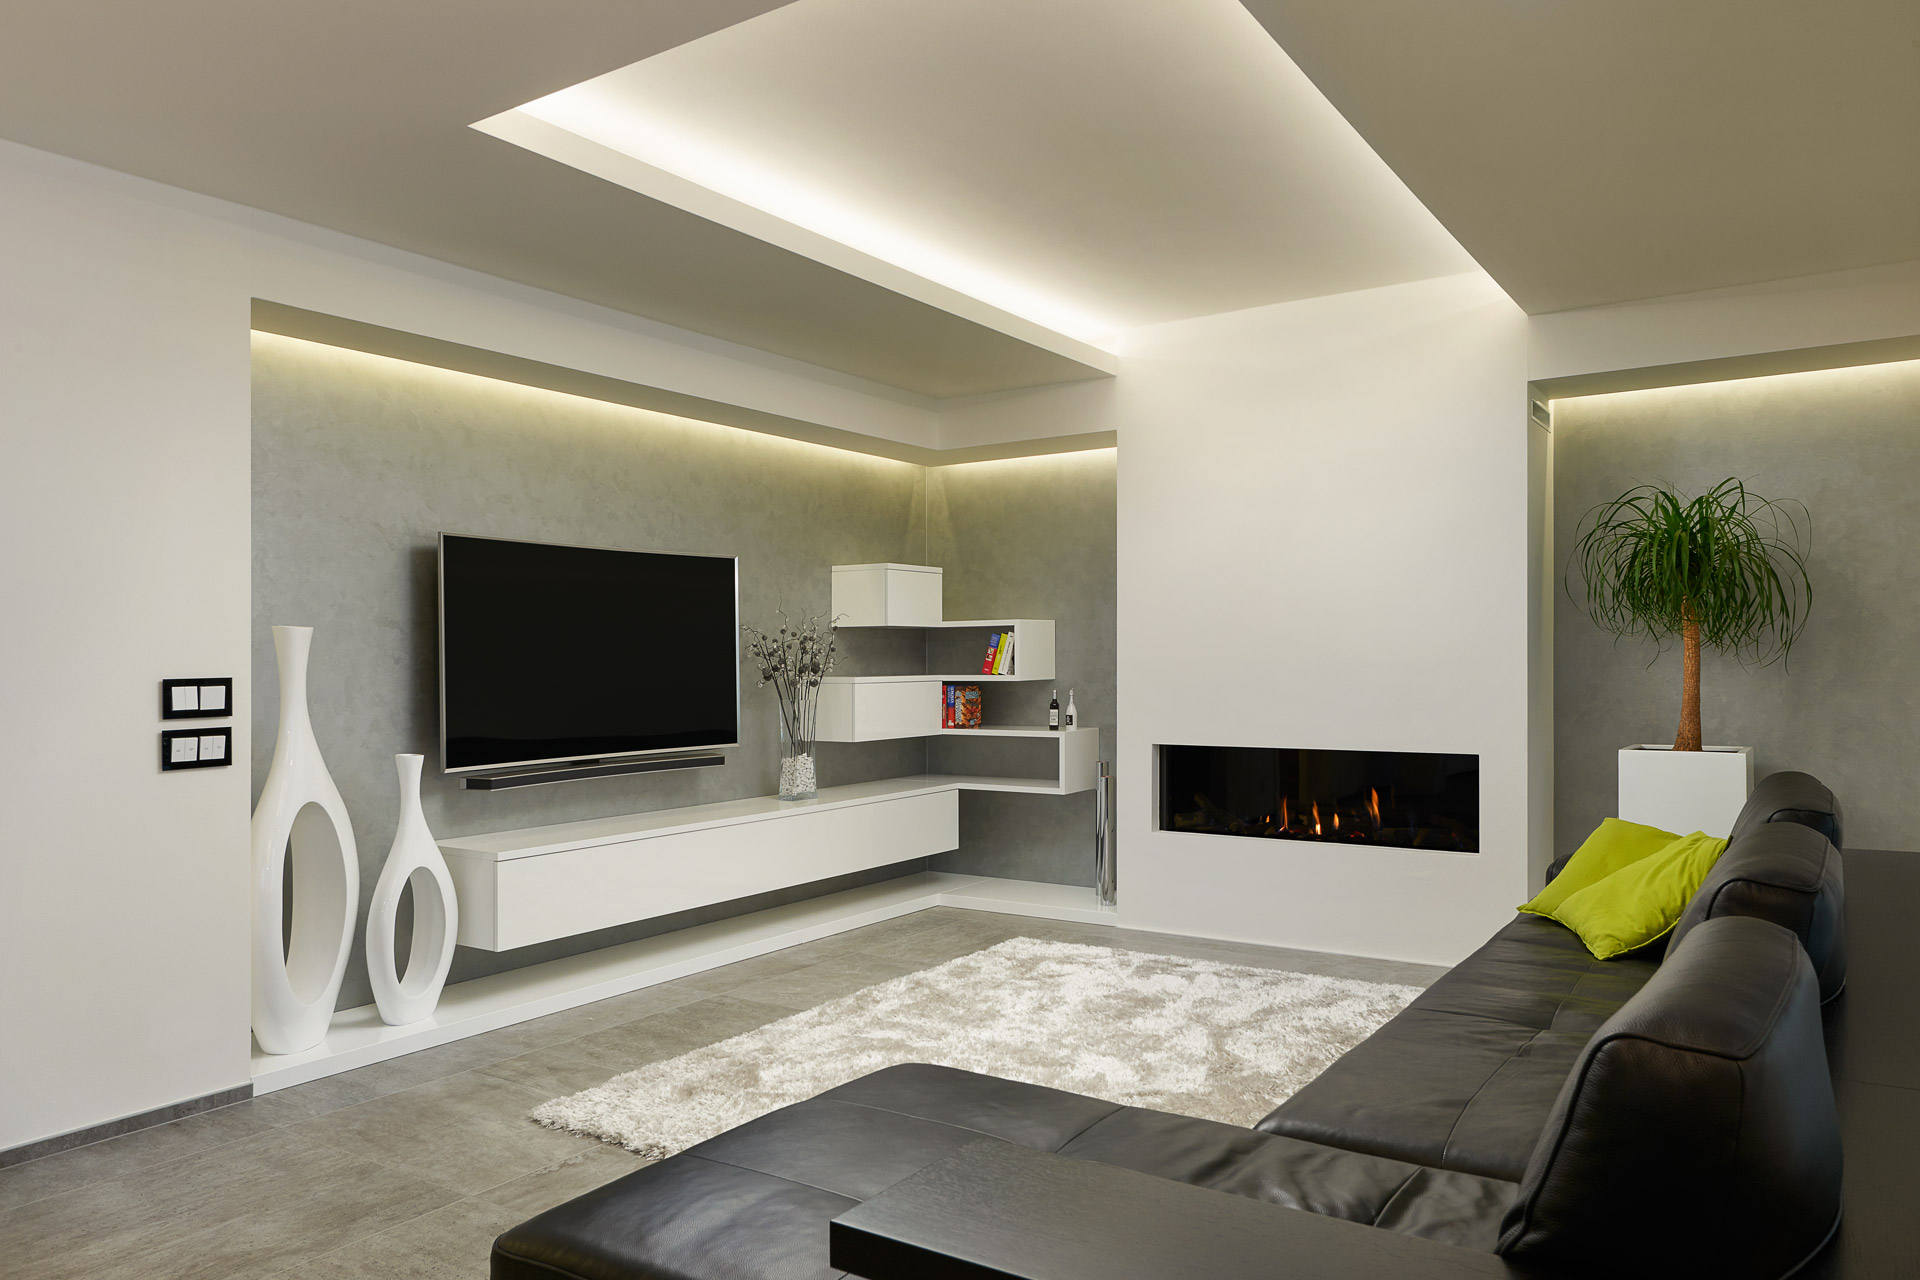 Hanák Furniture Realization of the living room